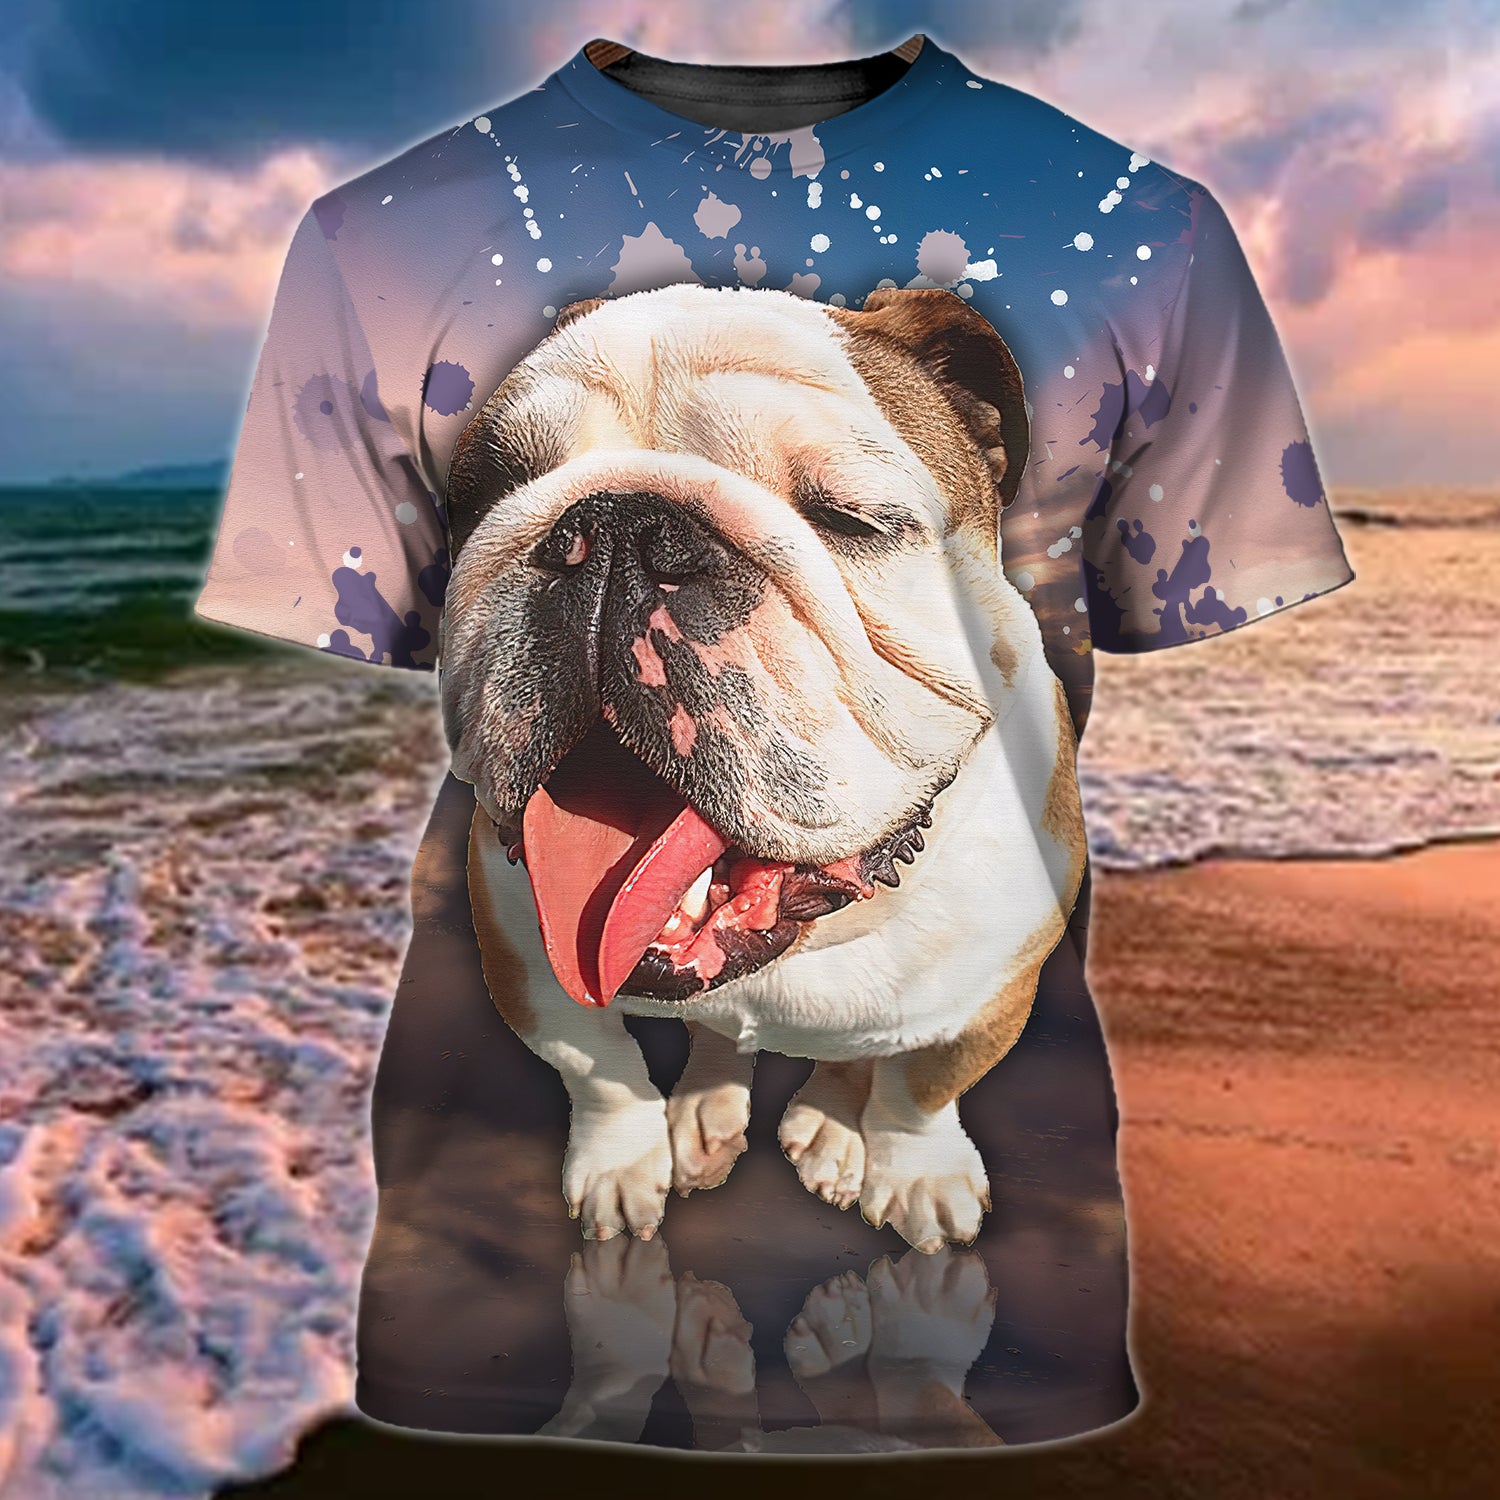 3D All Over Printed Bulldog On Shirt Men Women Gift For Dog Lovers